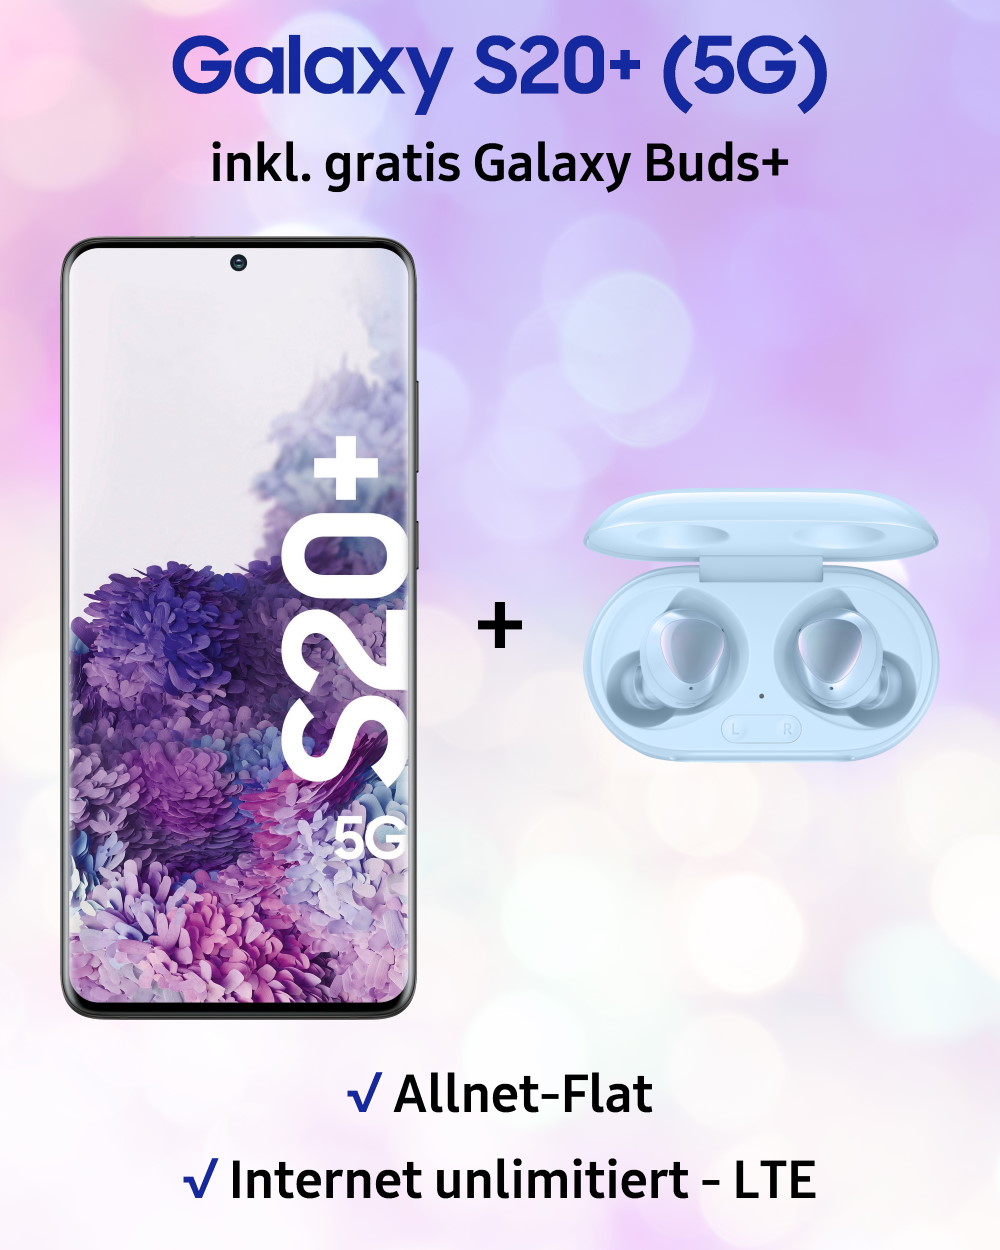 Galaxy S20+ inkl. gratis Galaxy Buds+ und unbegrenzte LTE Allnet-Flat